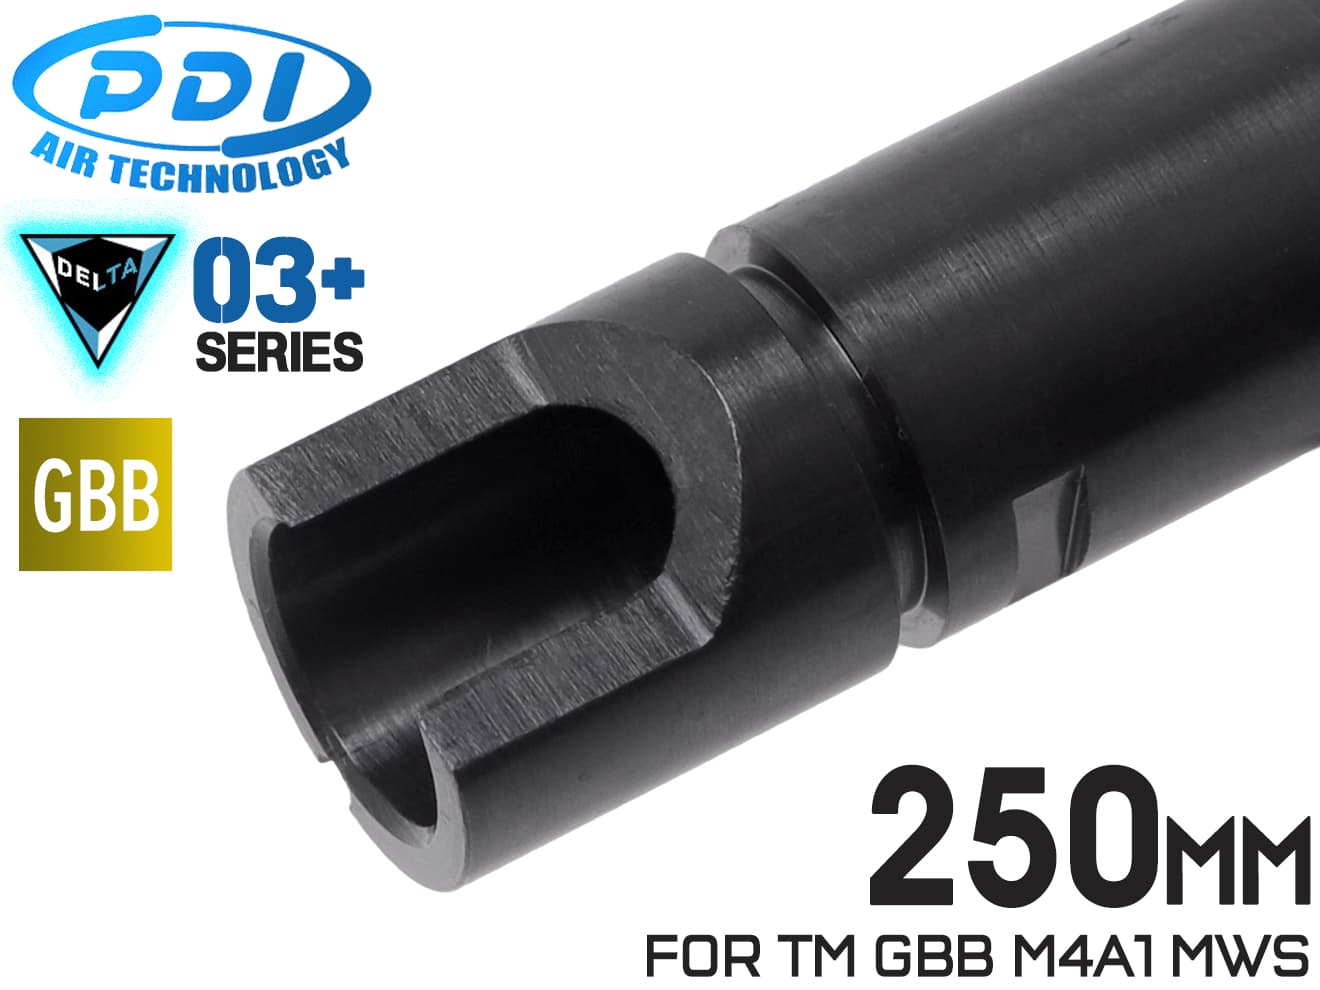 PDI DELTAシリーズ 03+ GBB 精密インナーバレル(6.03±0.007) 250mm マルイ M4MWS/MK18Mod1/URG-I/MTR16/89式◆MARUI TM ガスブロ バランス 初速 集弾性 強化